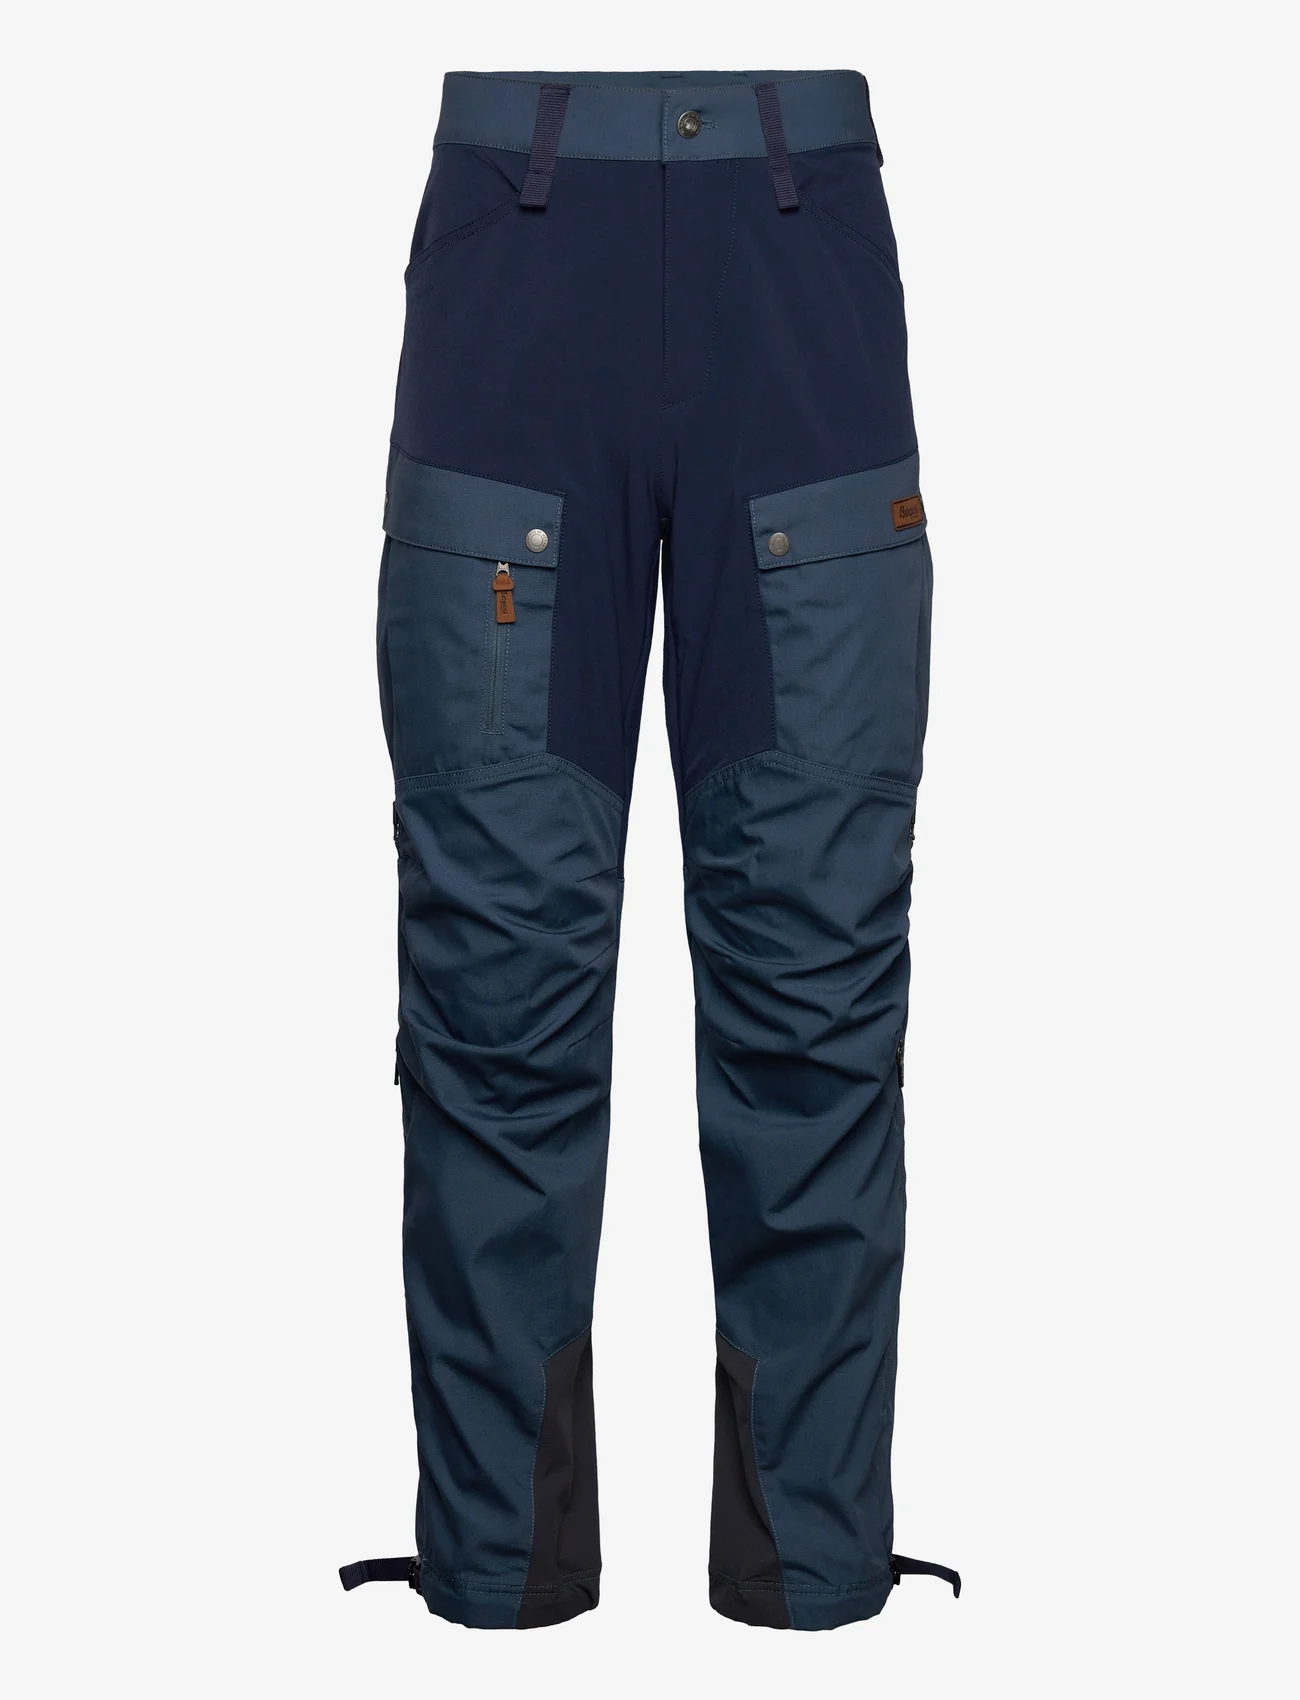 Bergans - Nordmarka Favor Outdoor Pants Men - sportbroeken - orion blue/navy blue - 0